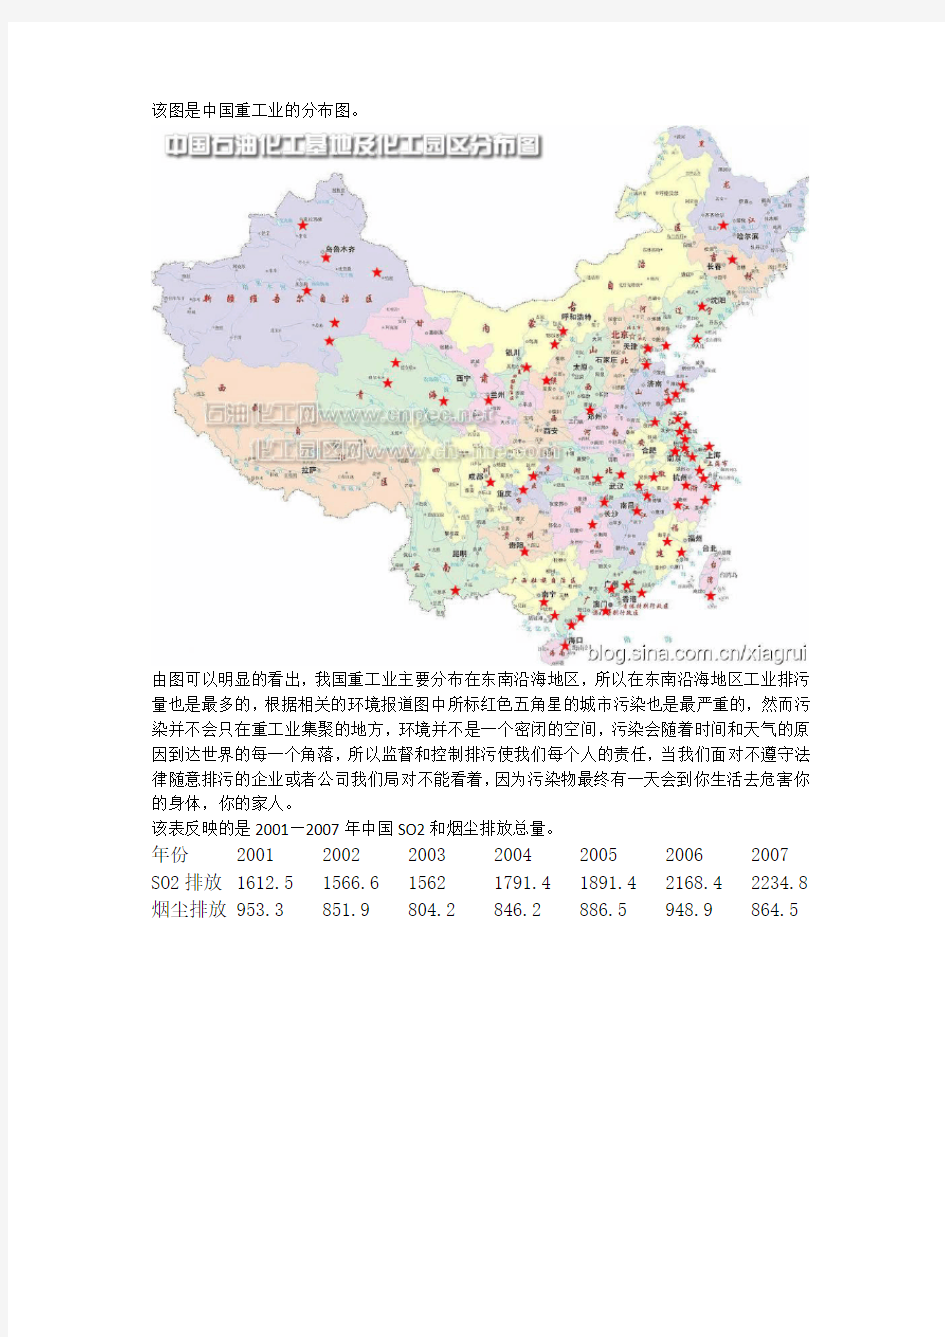 该图是中国重工业的分布图